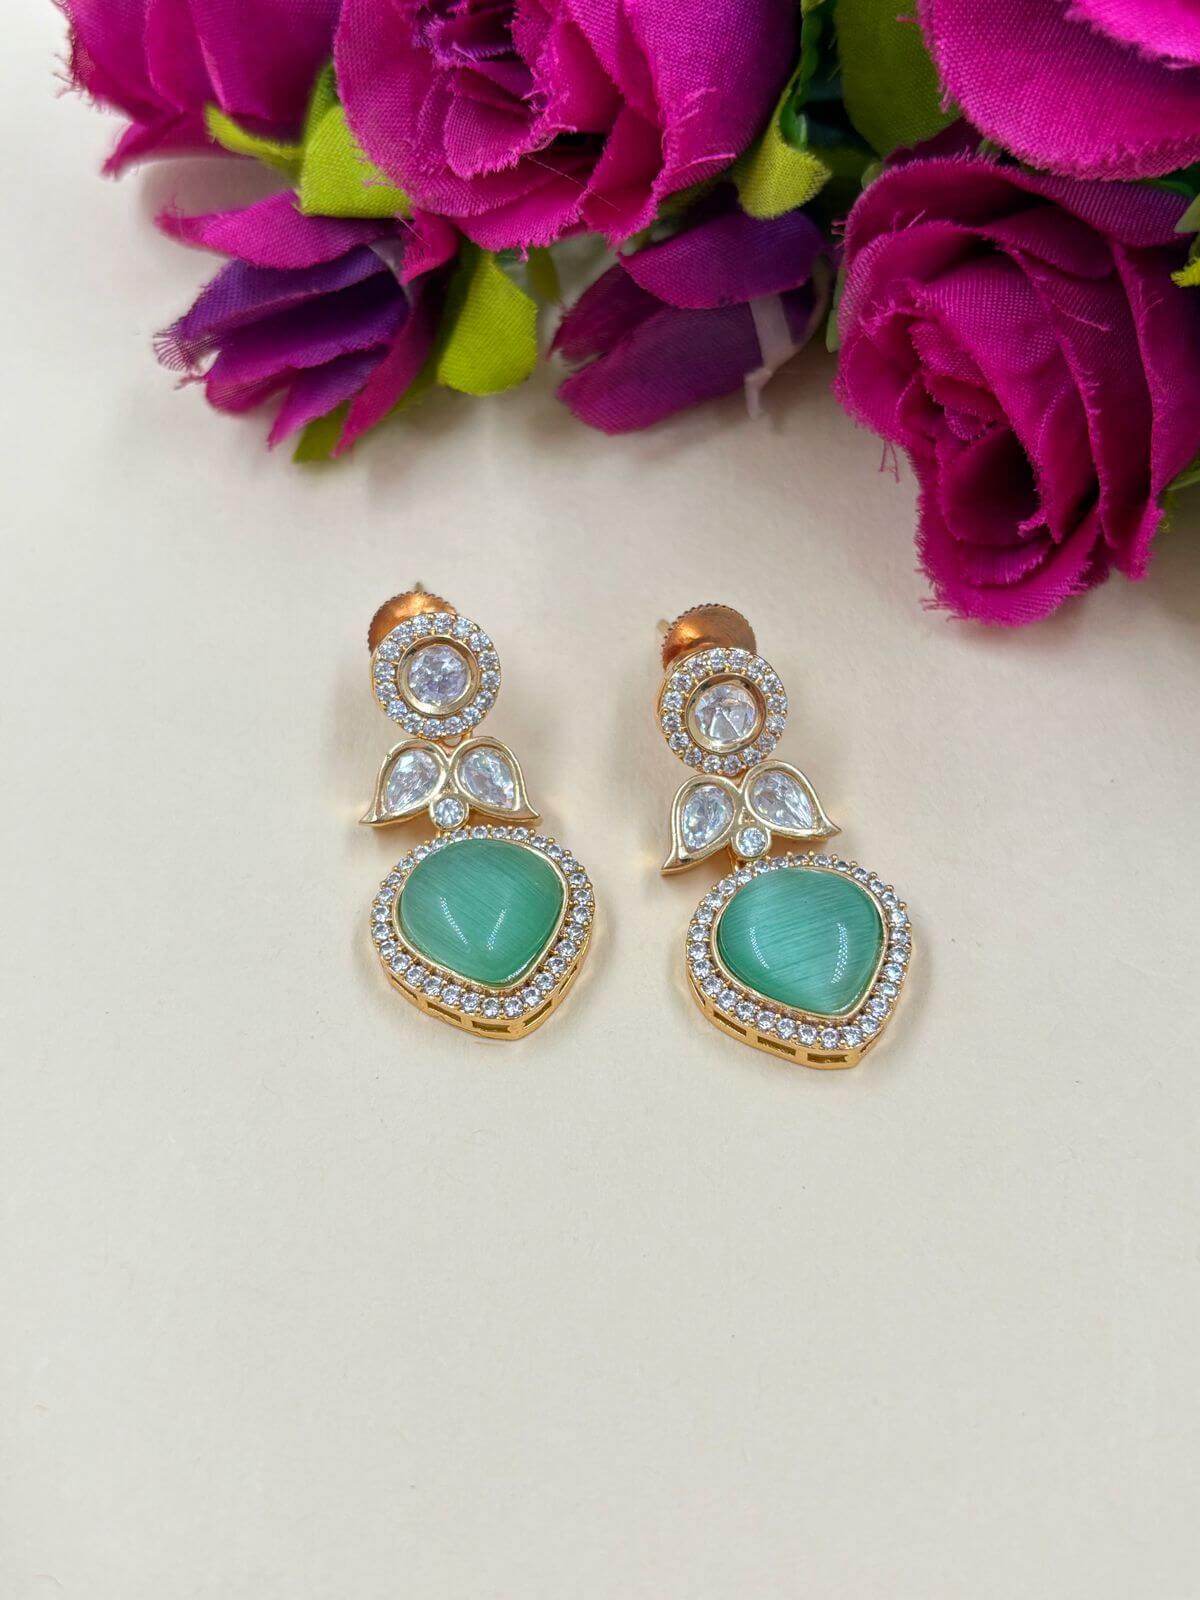 Mouni Artificial Small Mint Green Stone Polki Earrings | Small Lightweight Earrings For Women